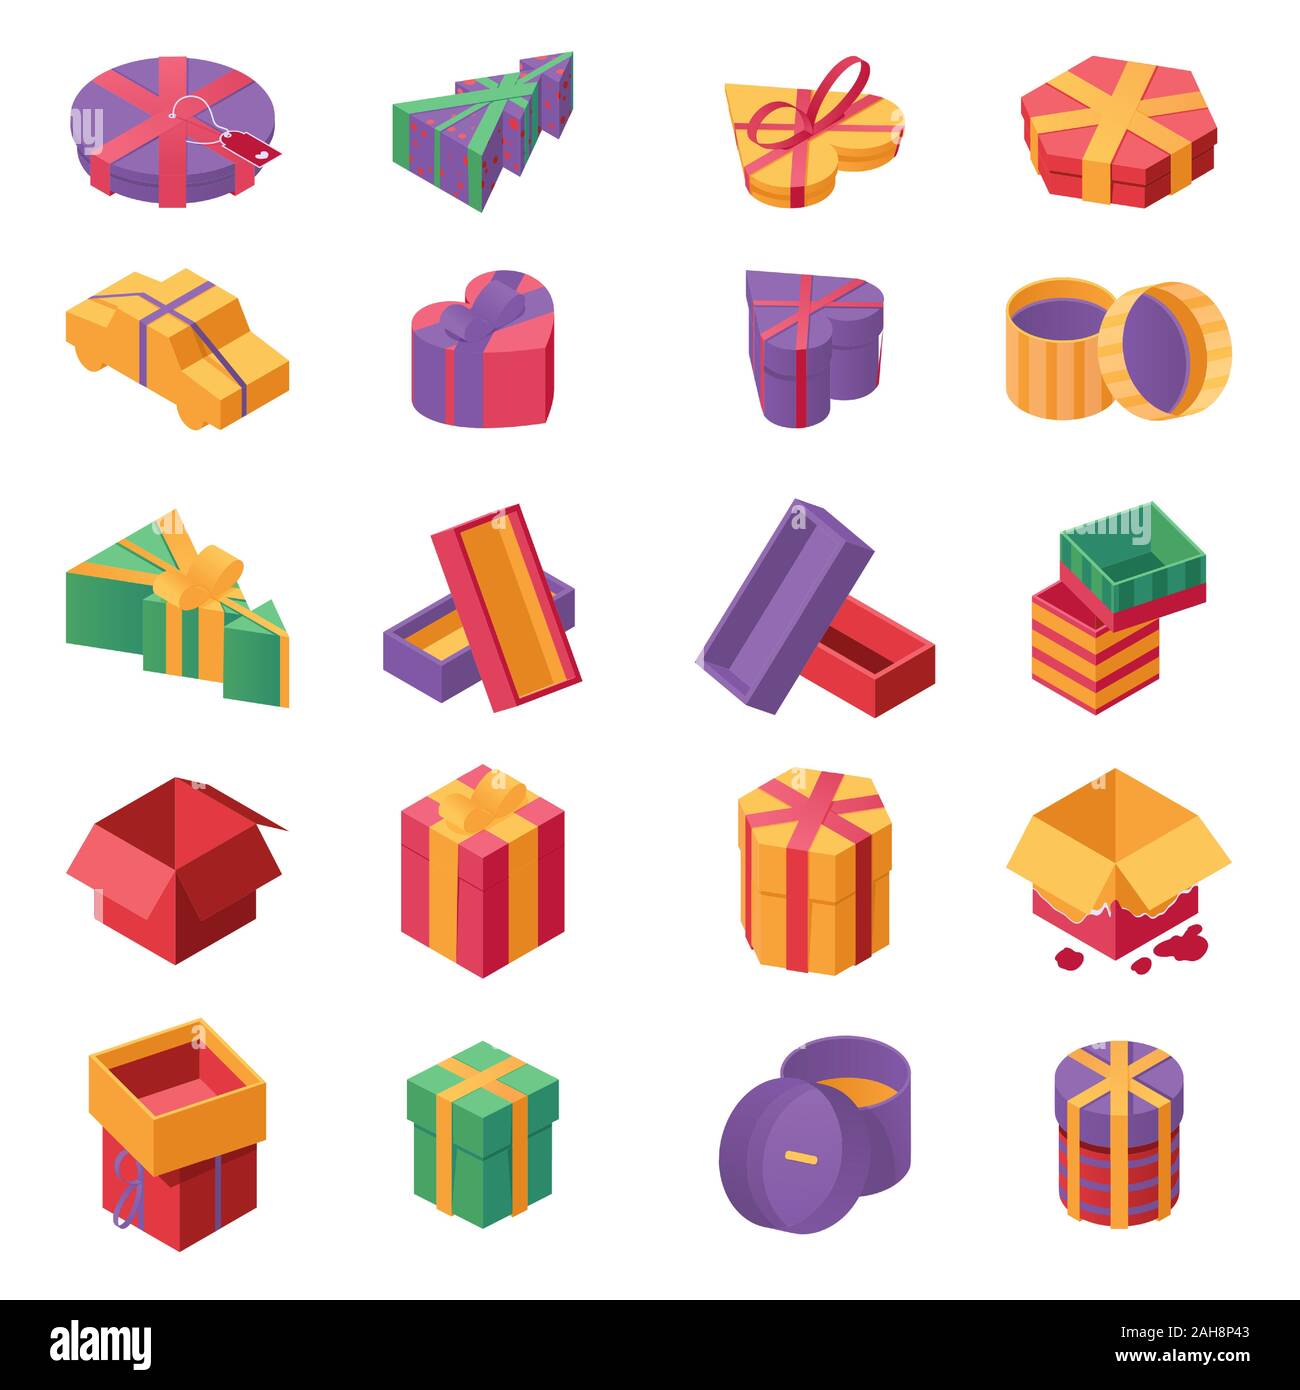 Geschenkboxen isometrische Vector Icons einstellen. Weihnachten und das neue Jahr festlich präsentiert, geburtstagsüberraschungen Pakete mit Schleifen und Bänder isoliert auf Weiss. Xmas gewickelt und offenen giftboxes Flachbild Sammlung Stock Vektor